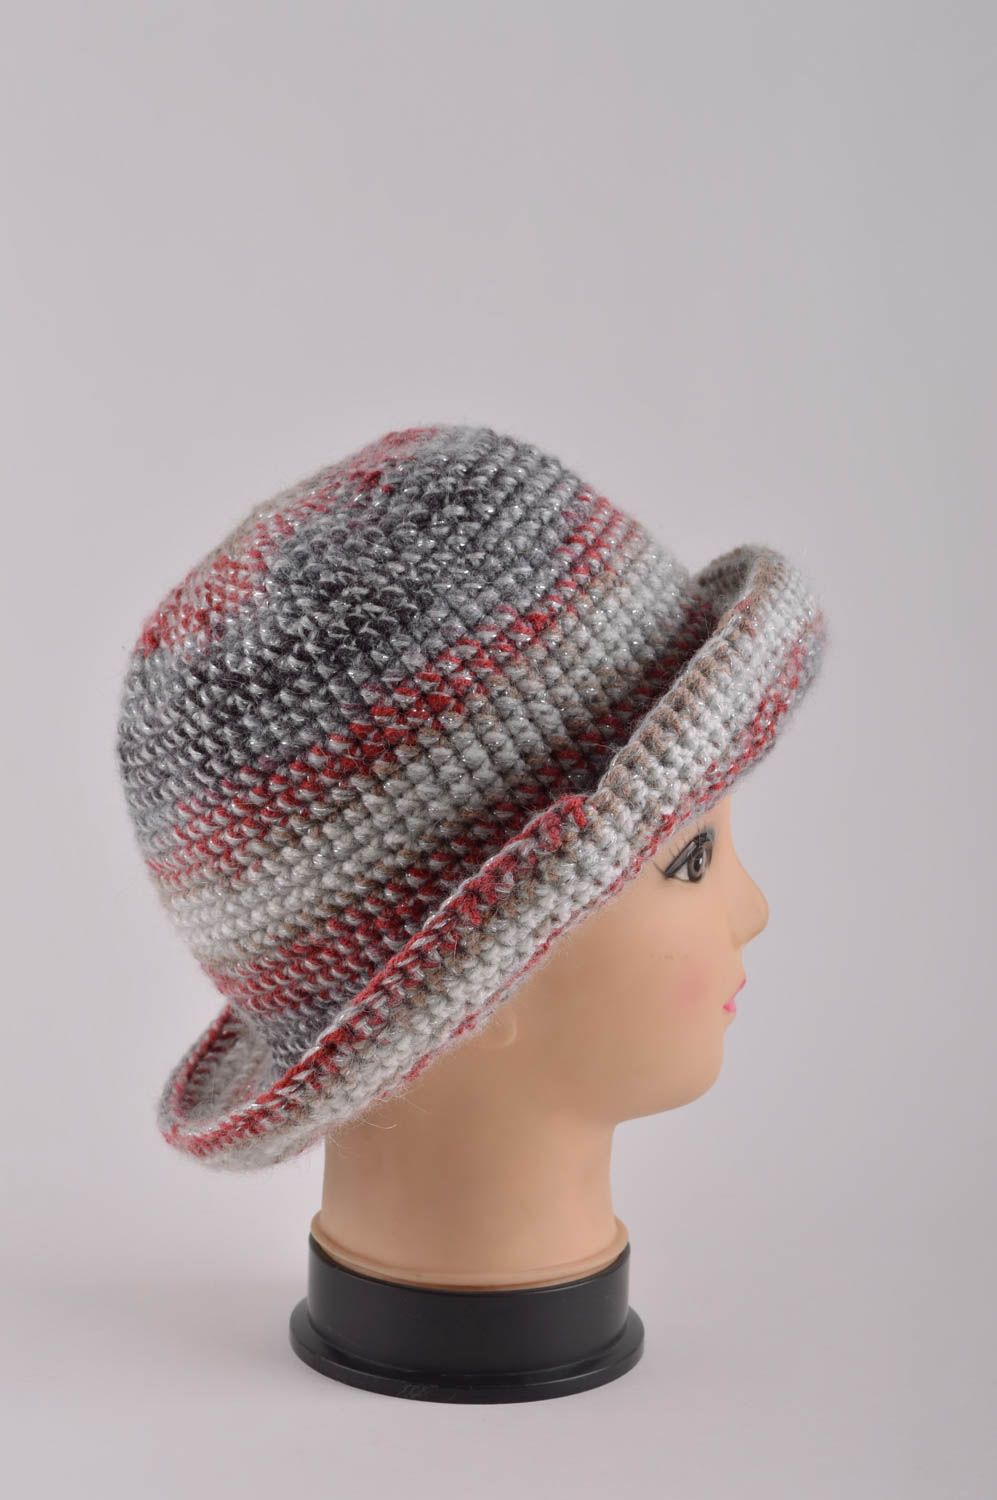 Designer hat fashion accessories for women ladies hat handmade crochet hat photo 4